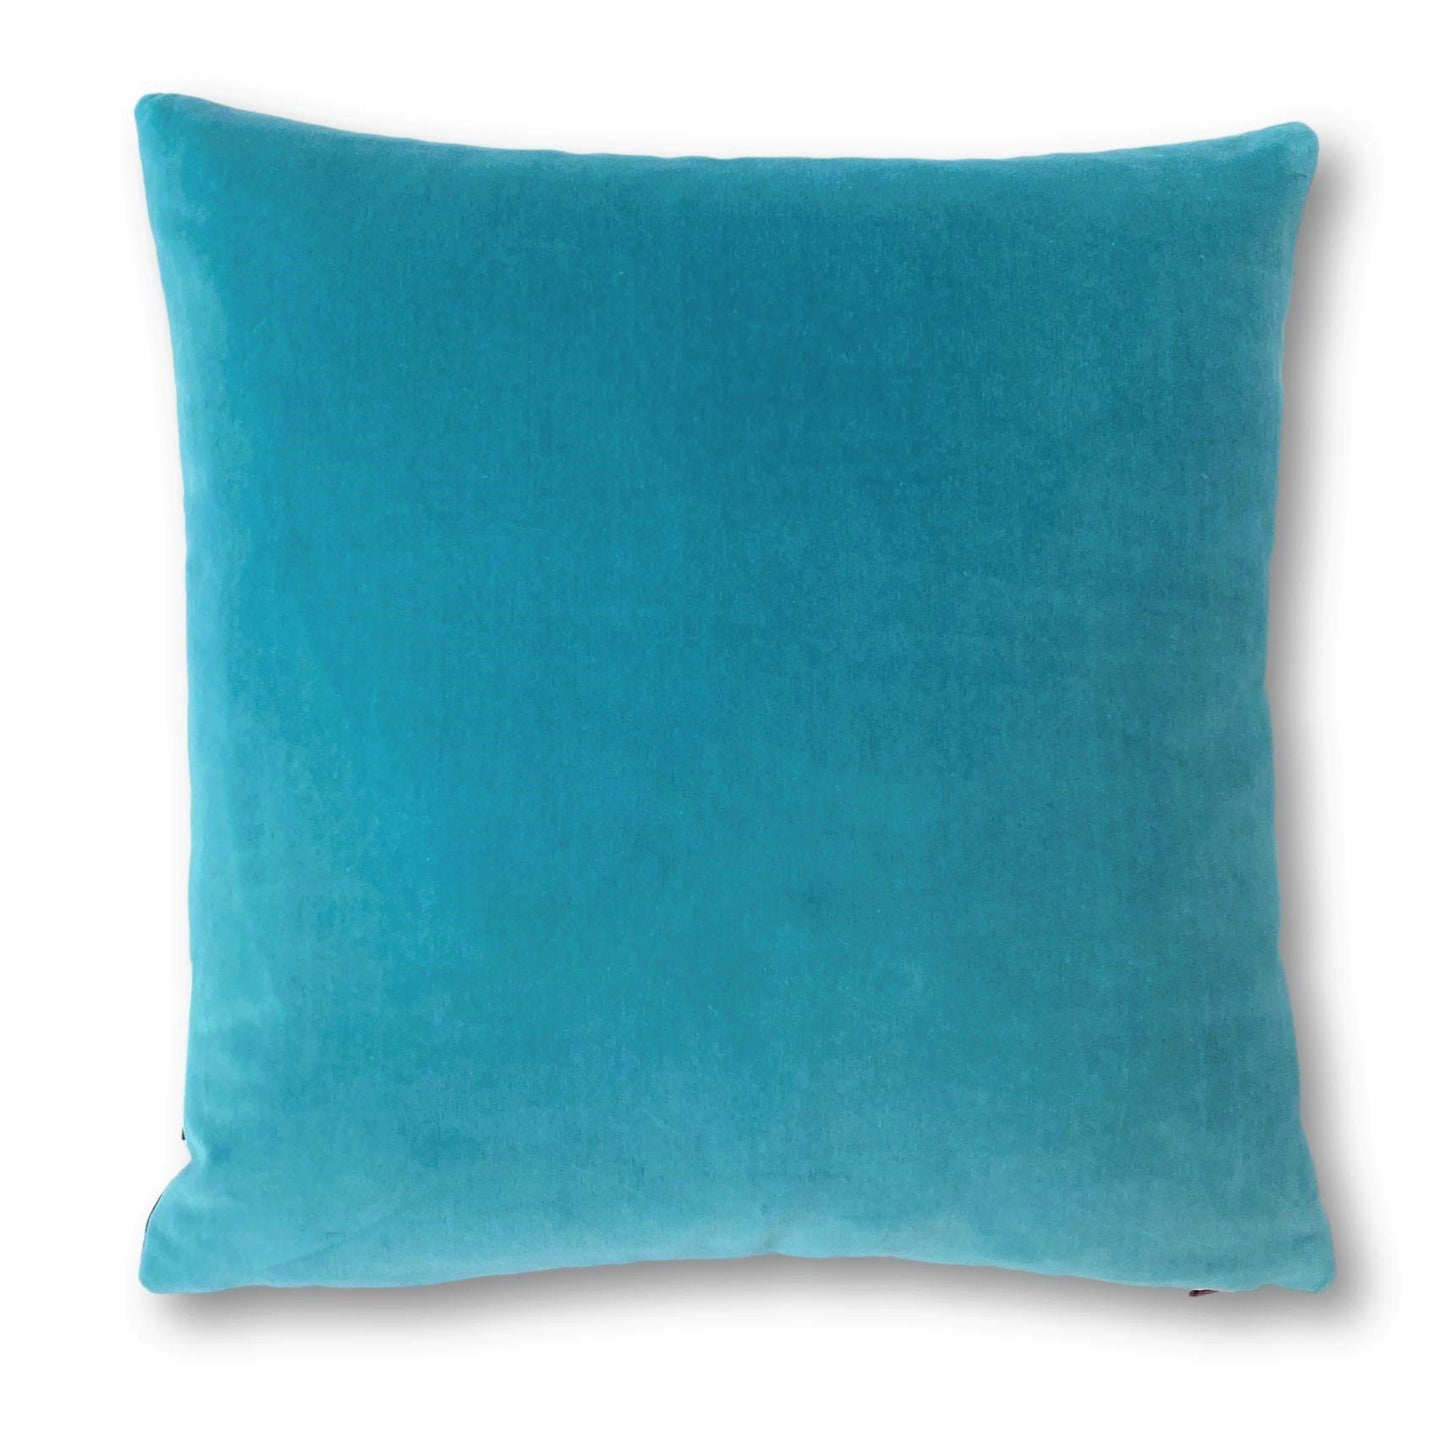 aqua cushions - turquoise fluffy cushions